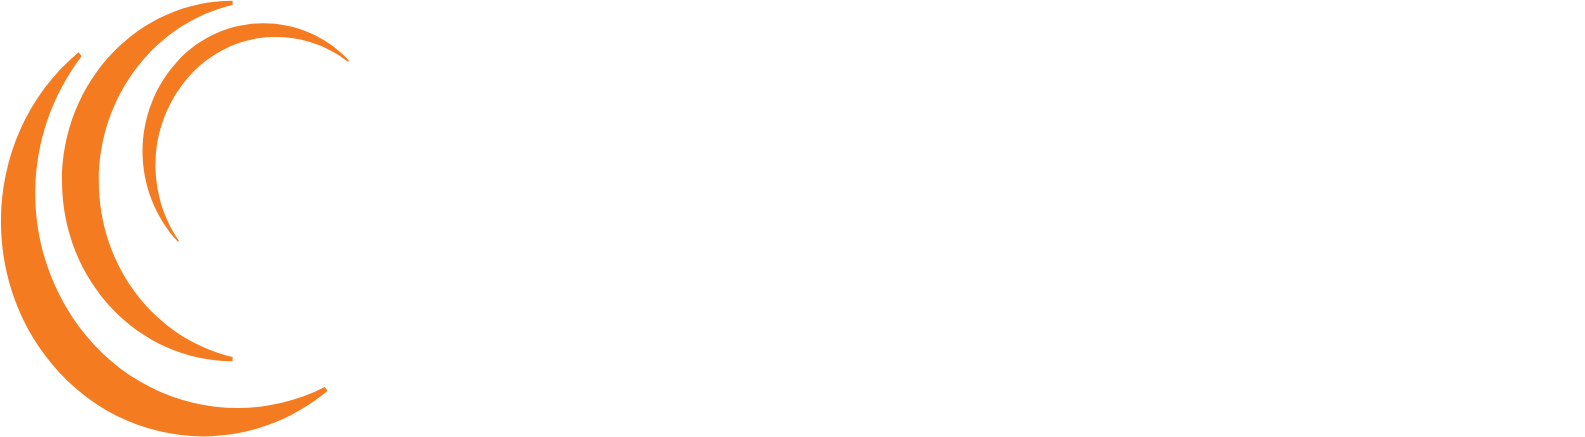 Soligenix logo grand pour les fonds sombres (PNG transparent)